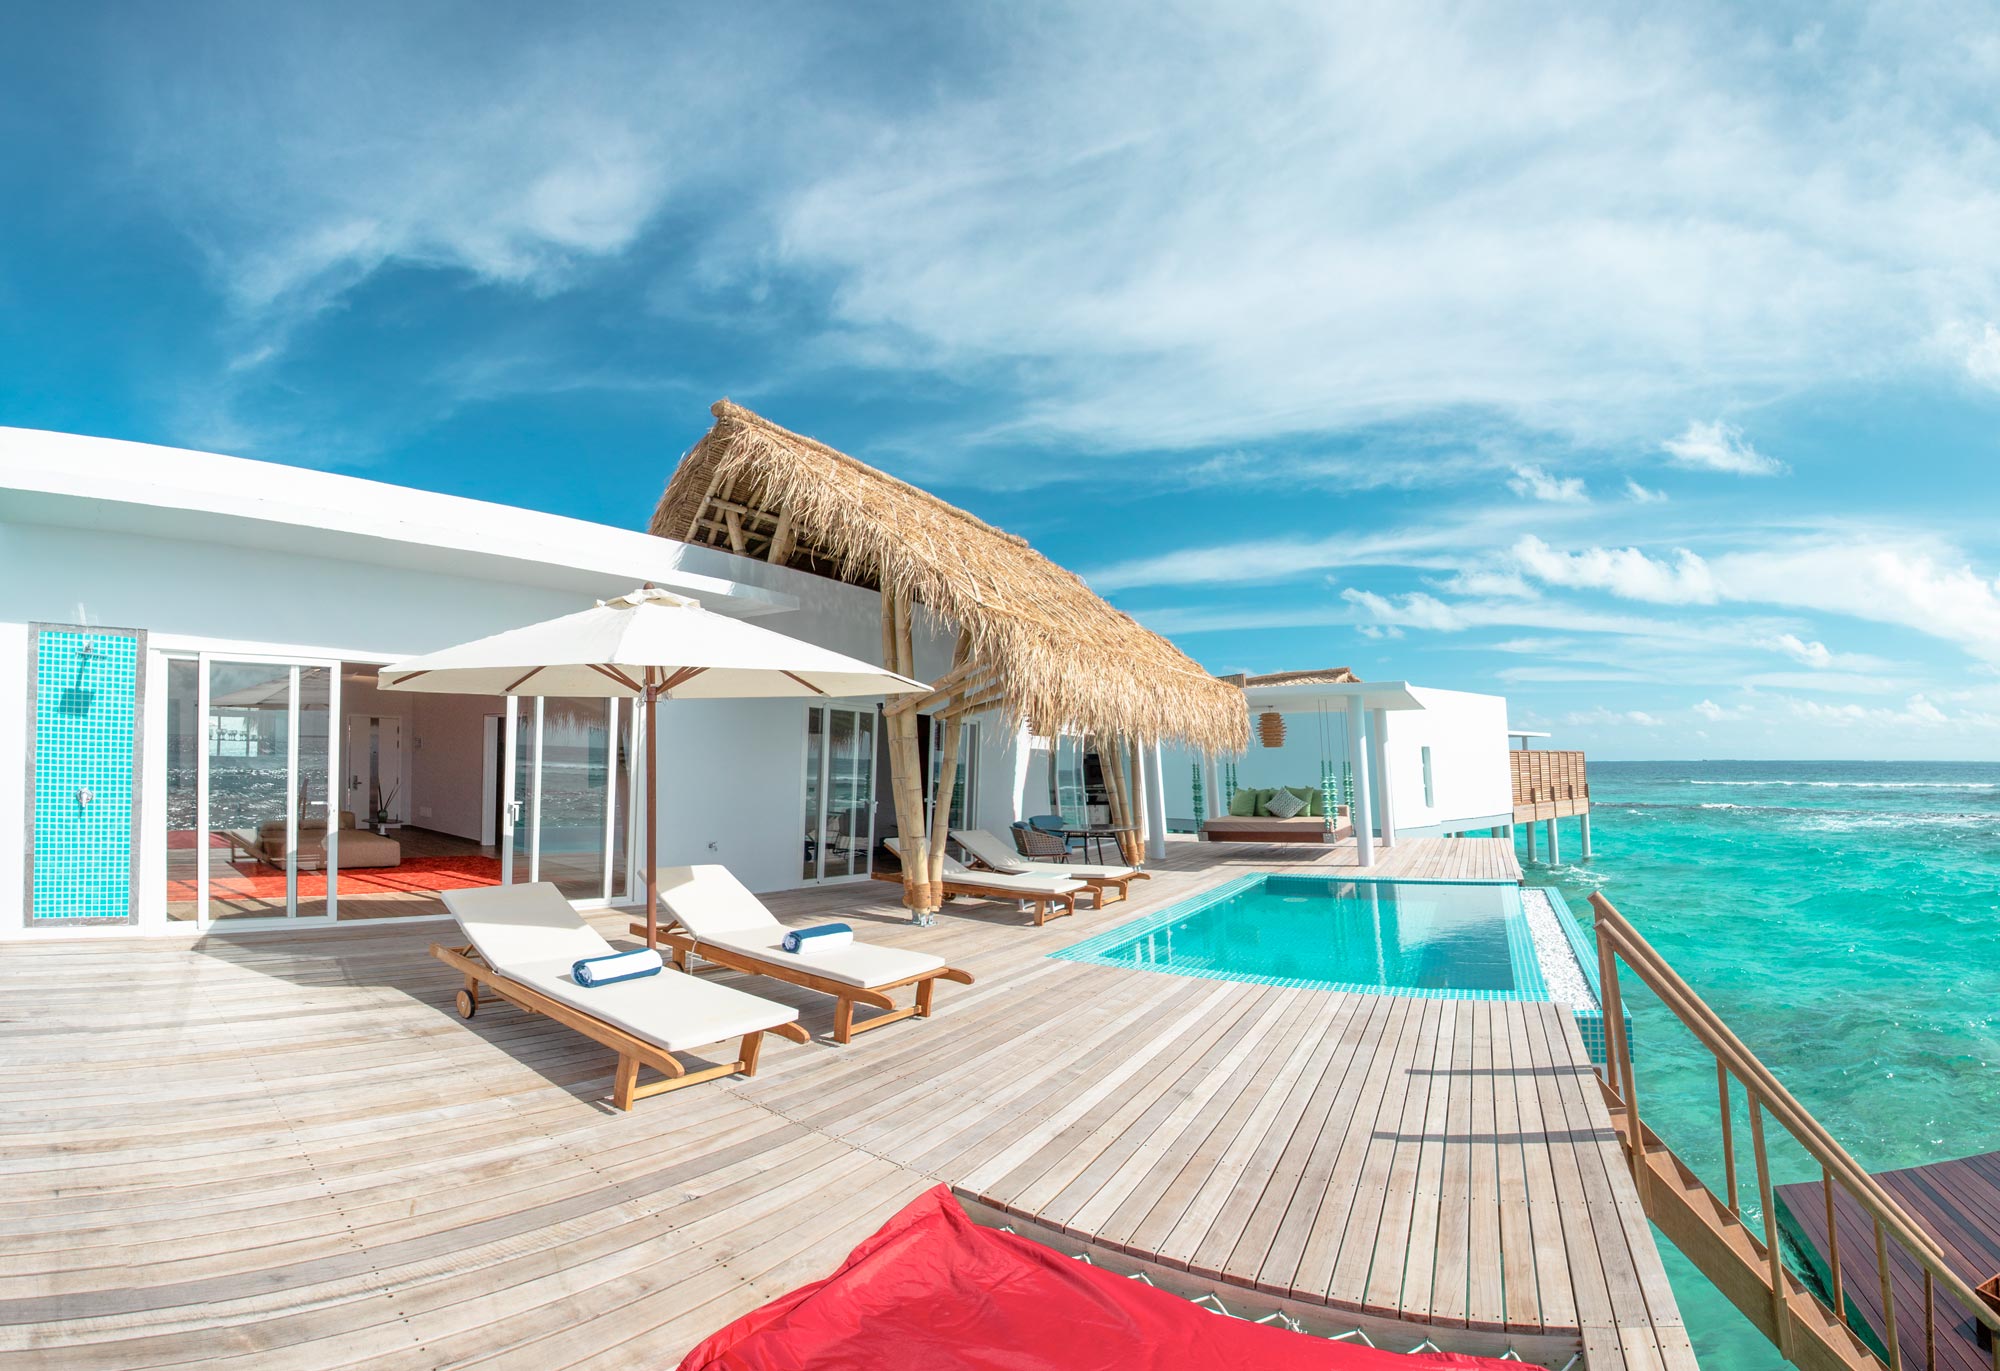 Отель Emerald Maldives: новое на атолле Раа